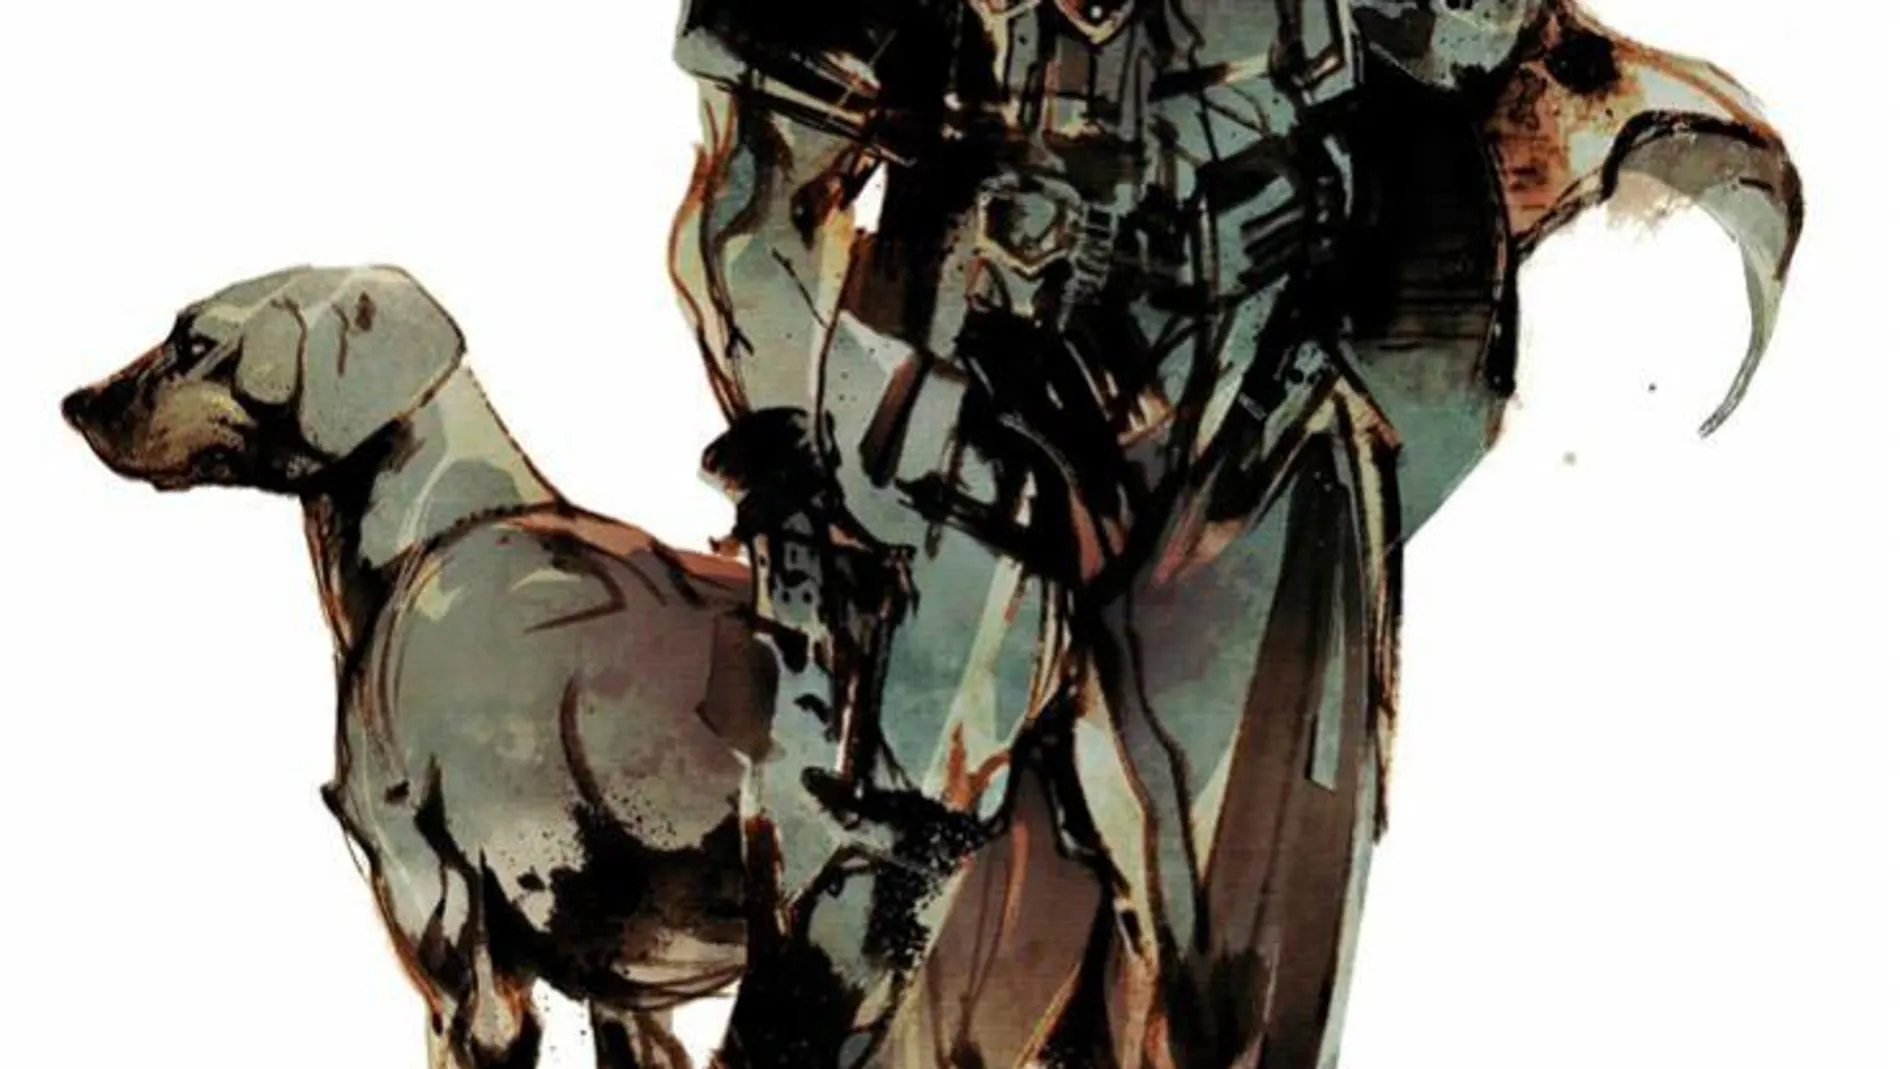 La edición especial de Metal Gear Solid 4 ya tiene fecha de lanzamiento